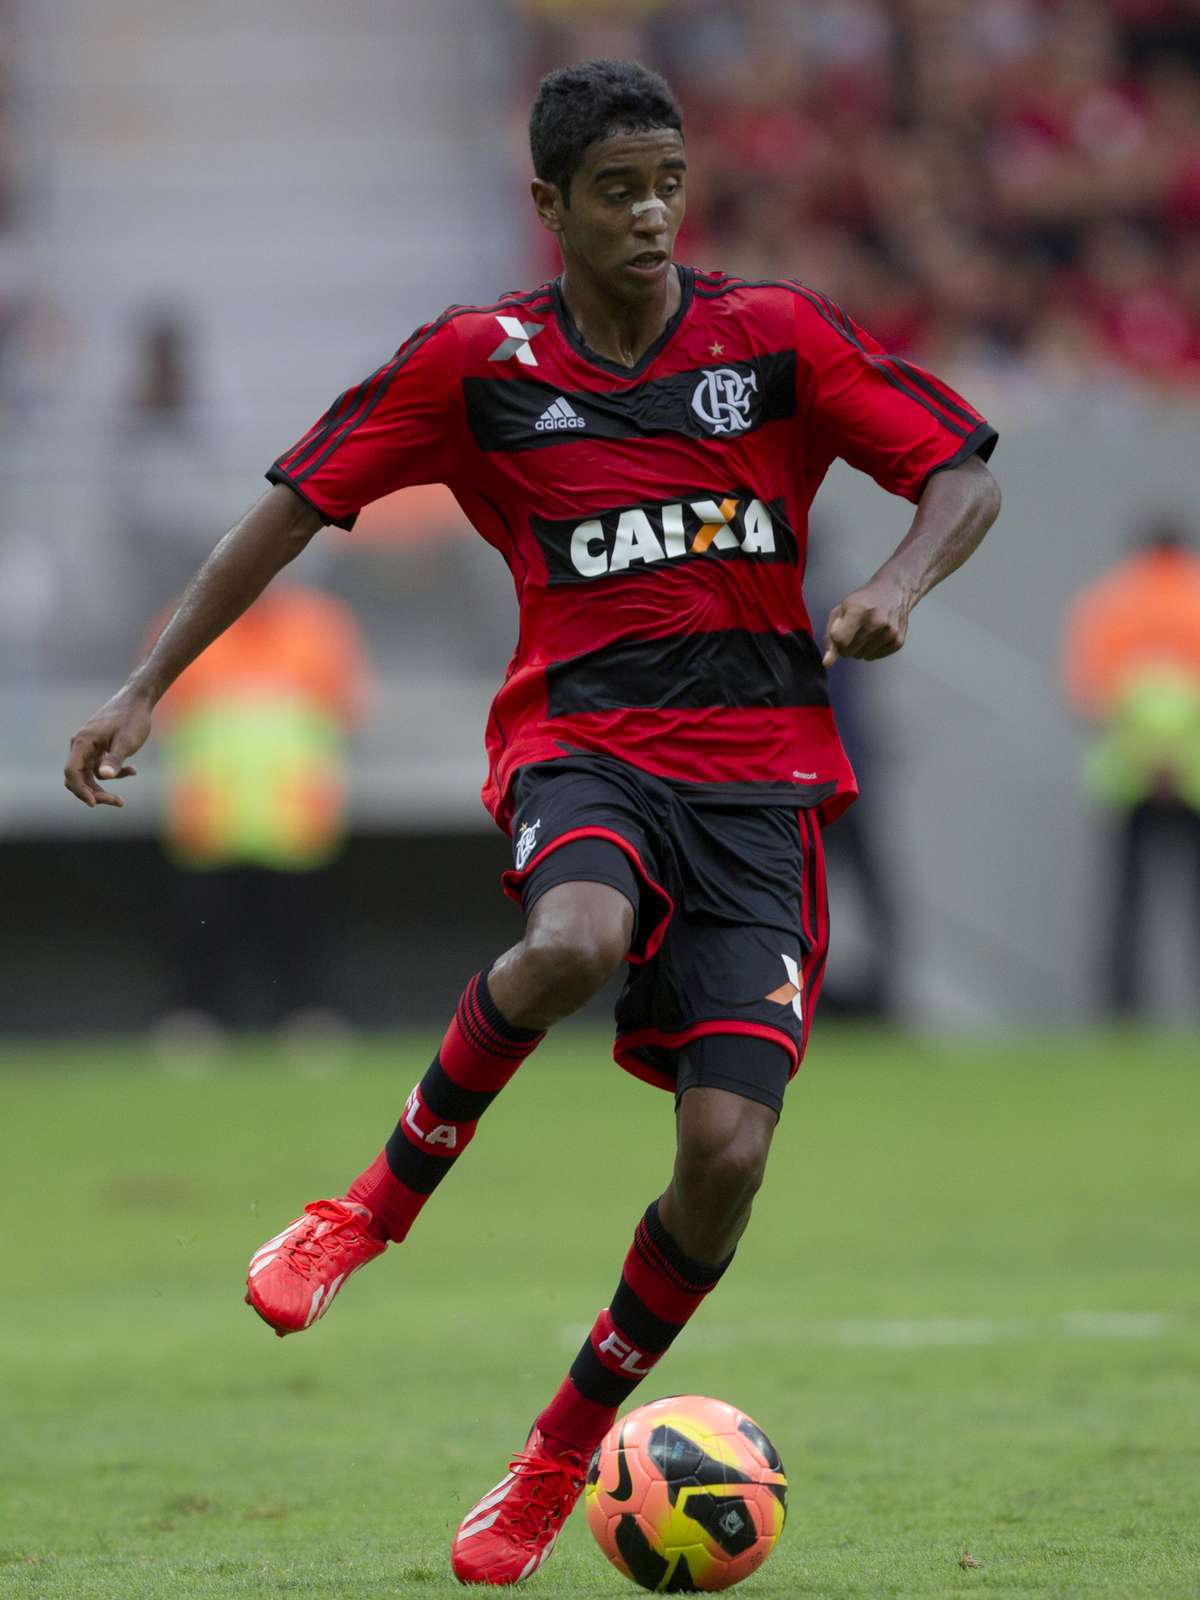 De olho no histórico recente, jovens do Flamengo tentam aproveitar início  do Carioca por espaço entre os profissionais, Flamengo